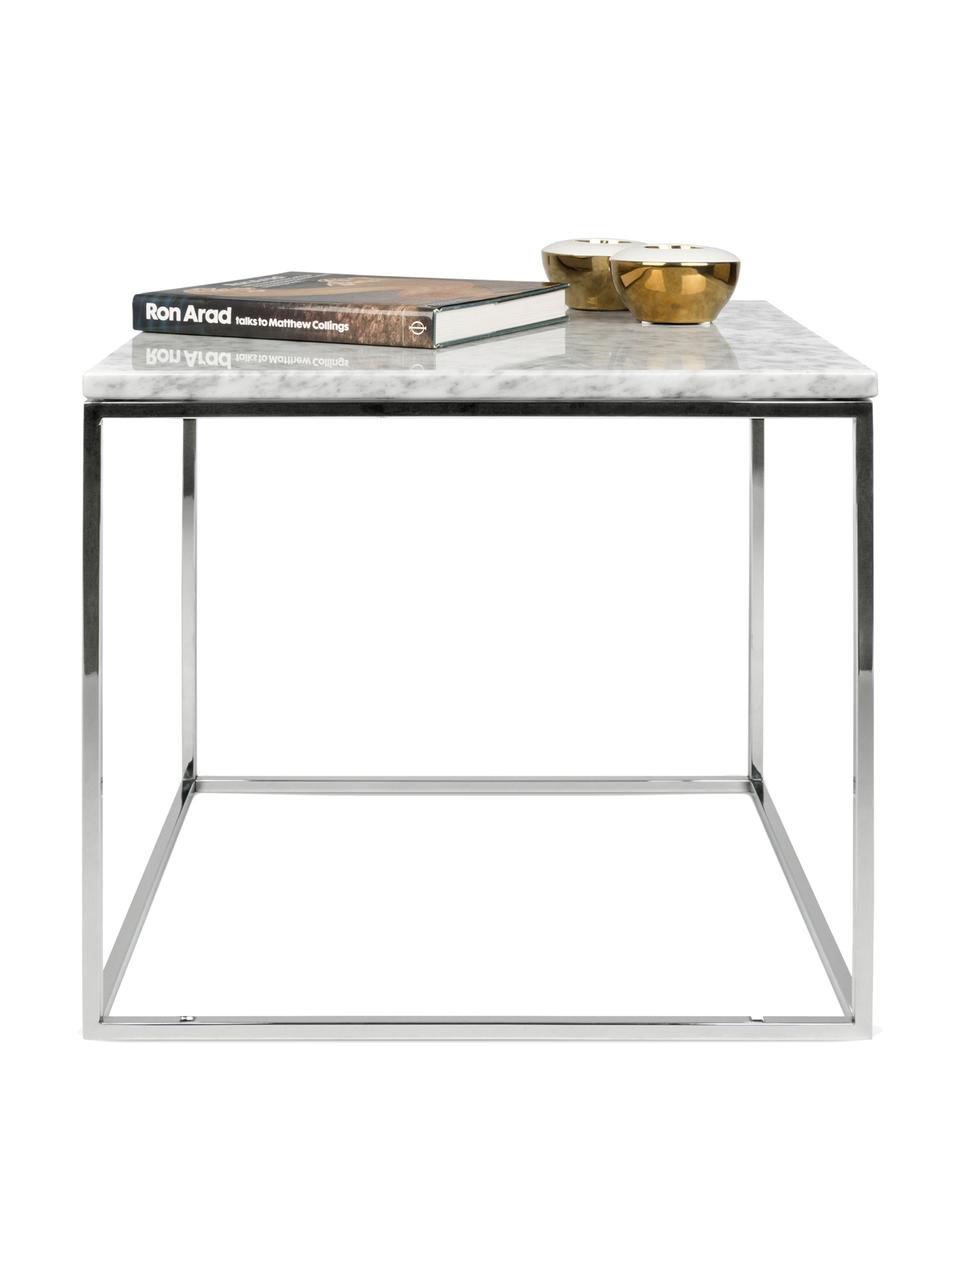 Marmor-Beistelltisch Gleam, Tischplatte: Marmor, Gestell: Stahl, verchromt, Tischplatte: Weiß, marmoriert<br>Gestell: Chrom, 50 x 45 cm